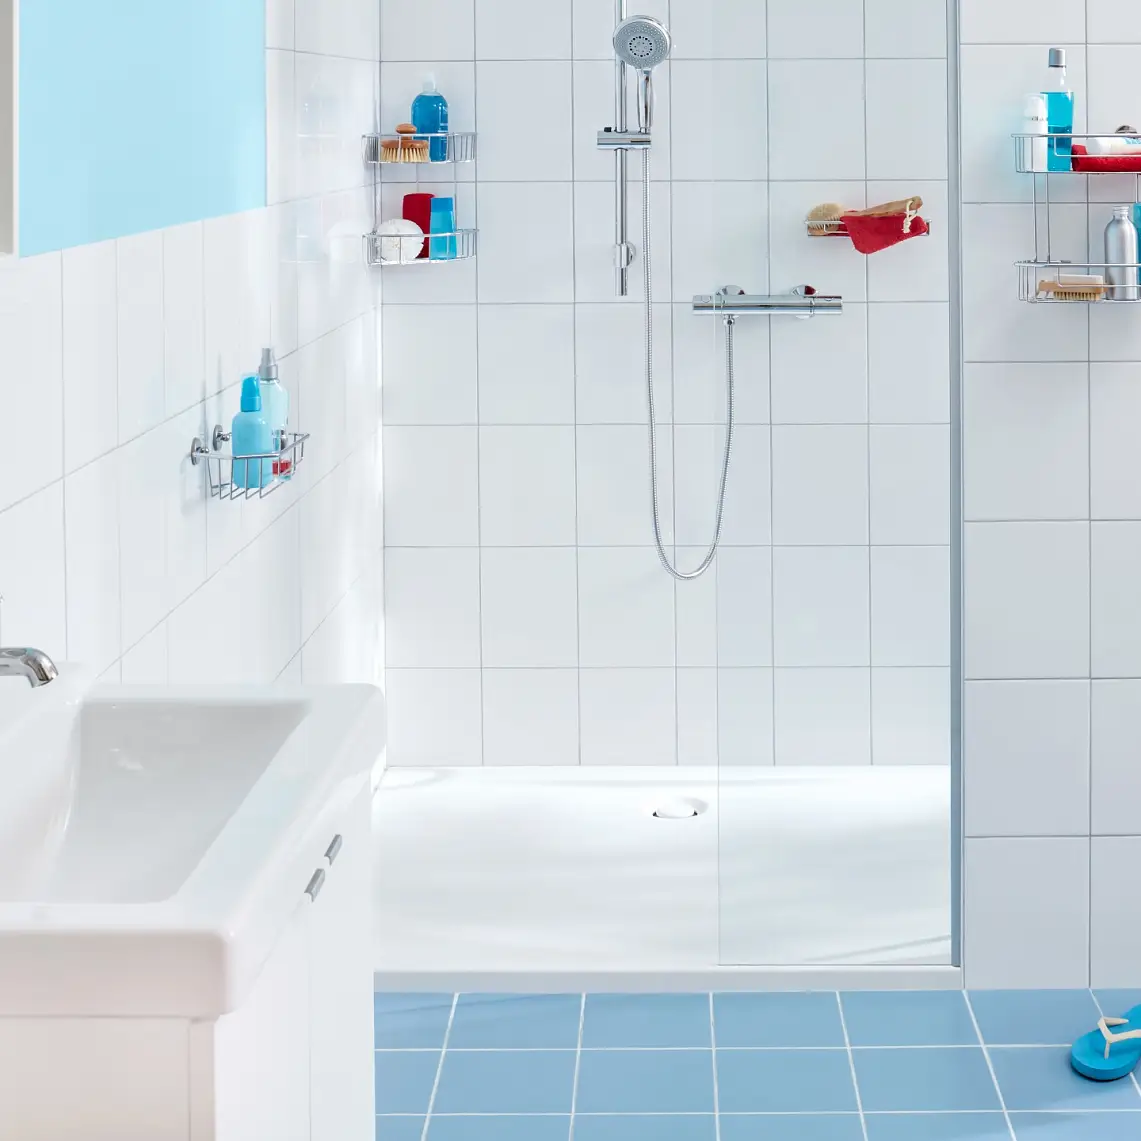 Moderne Aufbewahrungslösungen für das Badezimmer in funktionellem Design.